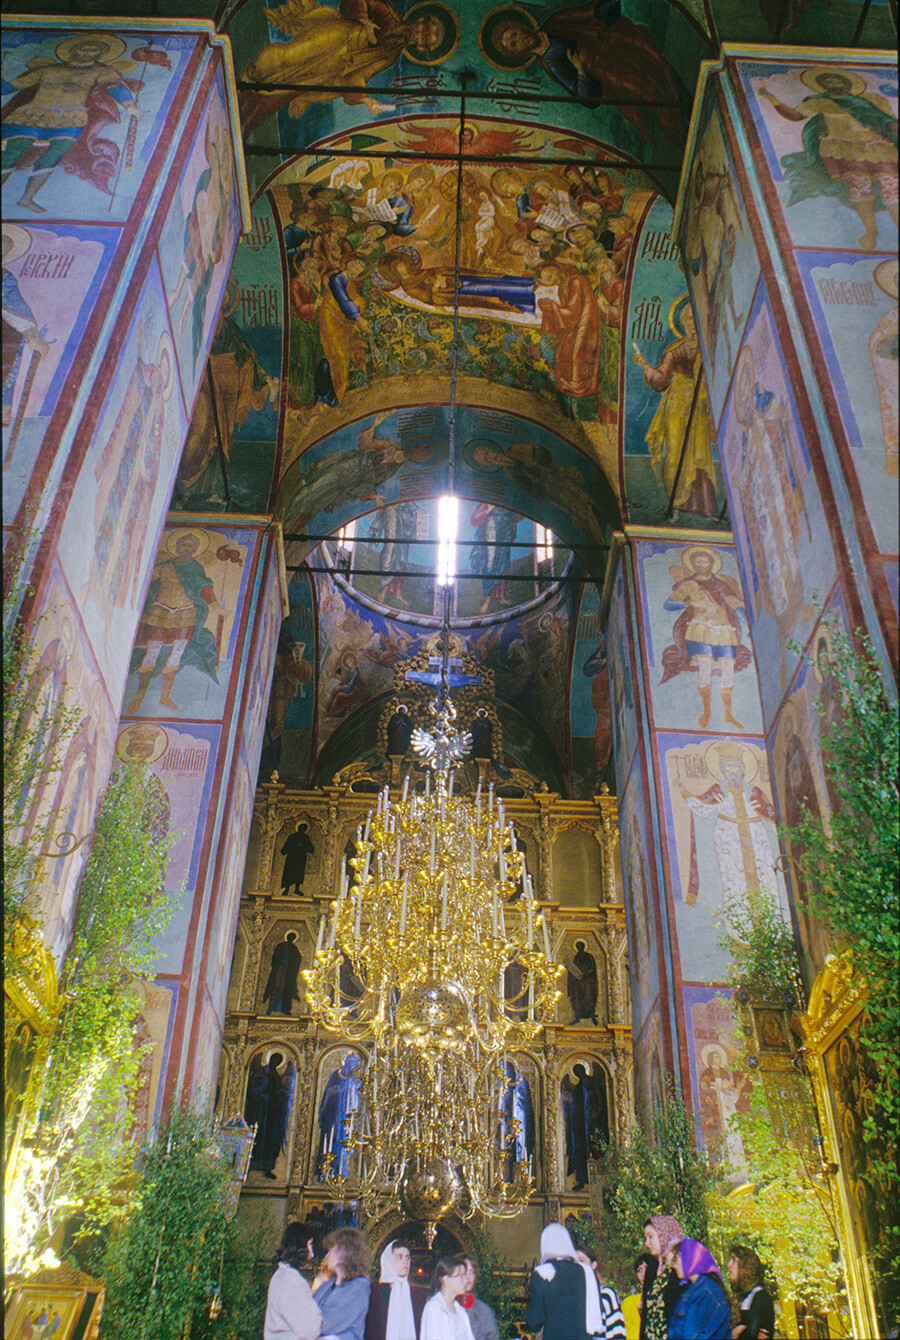 Monasterio de la Trinidad y San Sergio. Catedral de la Dormición. Pasillo central con candelabros, vista al este hacia la pantalla de iconos y la cúpula central. Fresco de la Dormición de María en la bóveda del techo. 29 de mayo de 1999